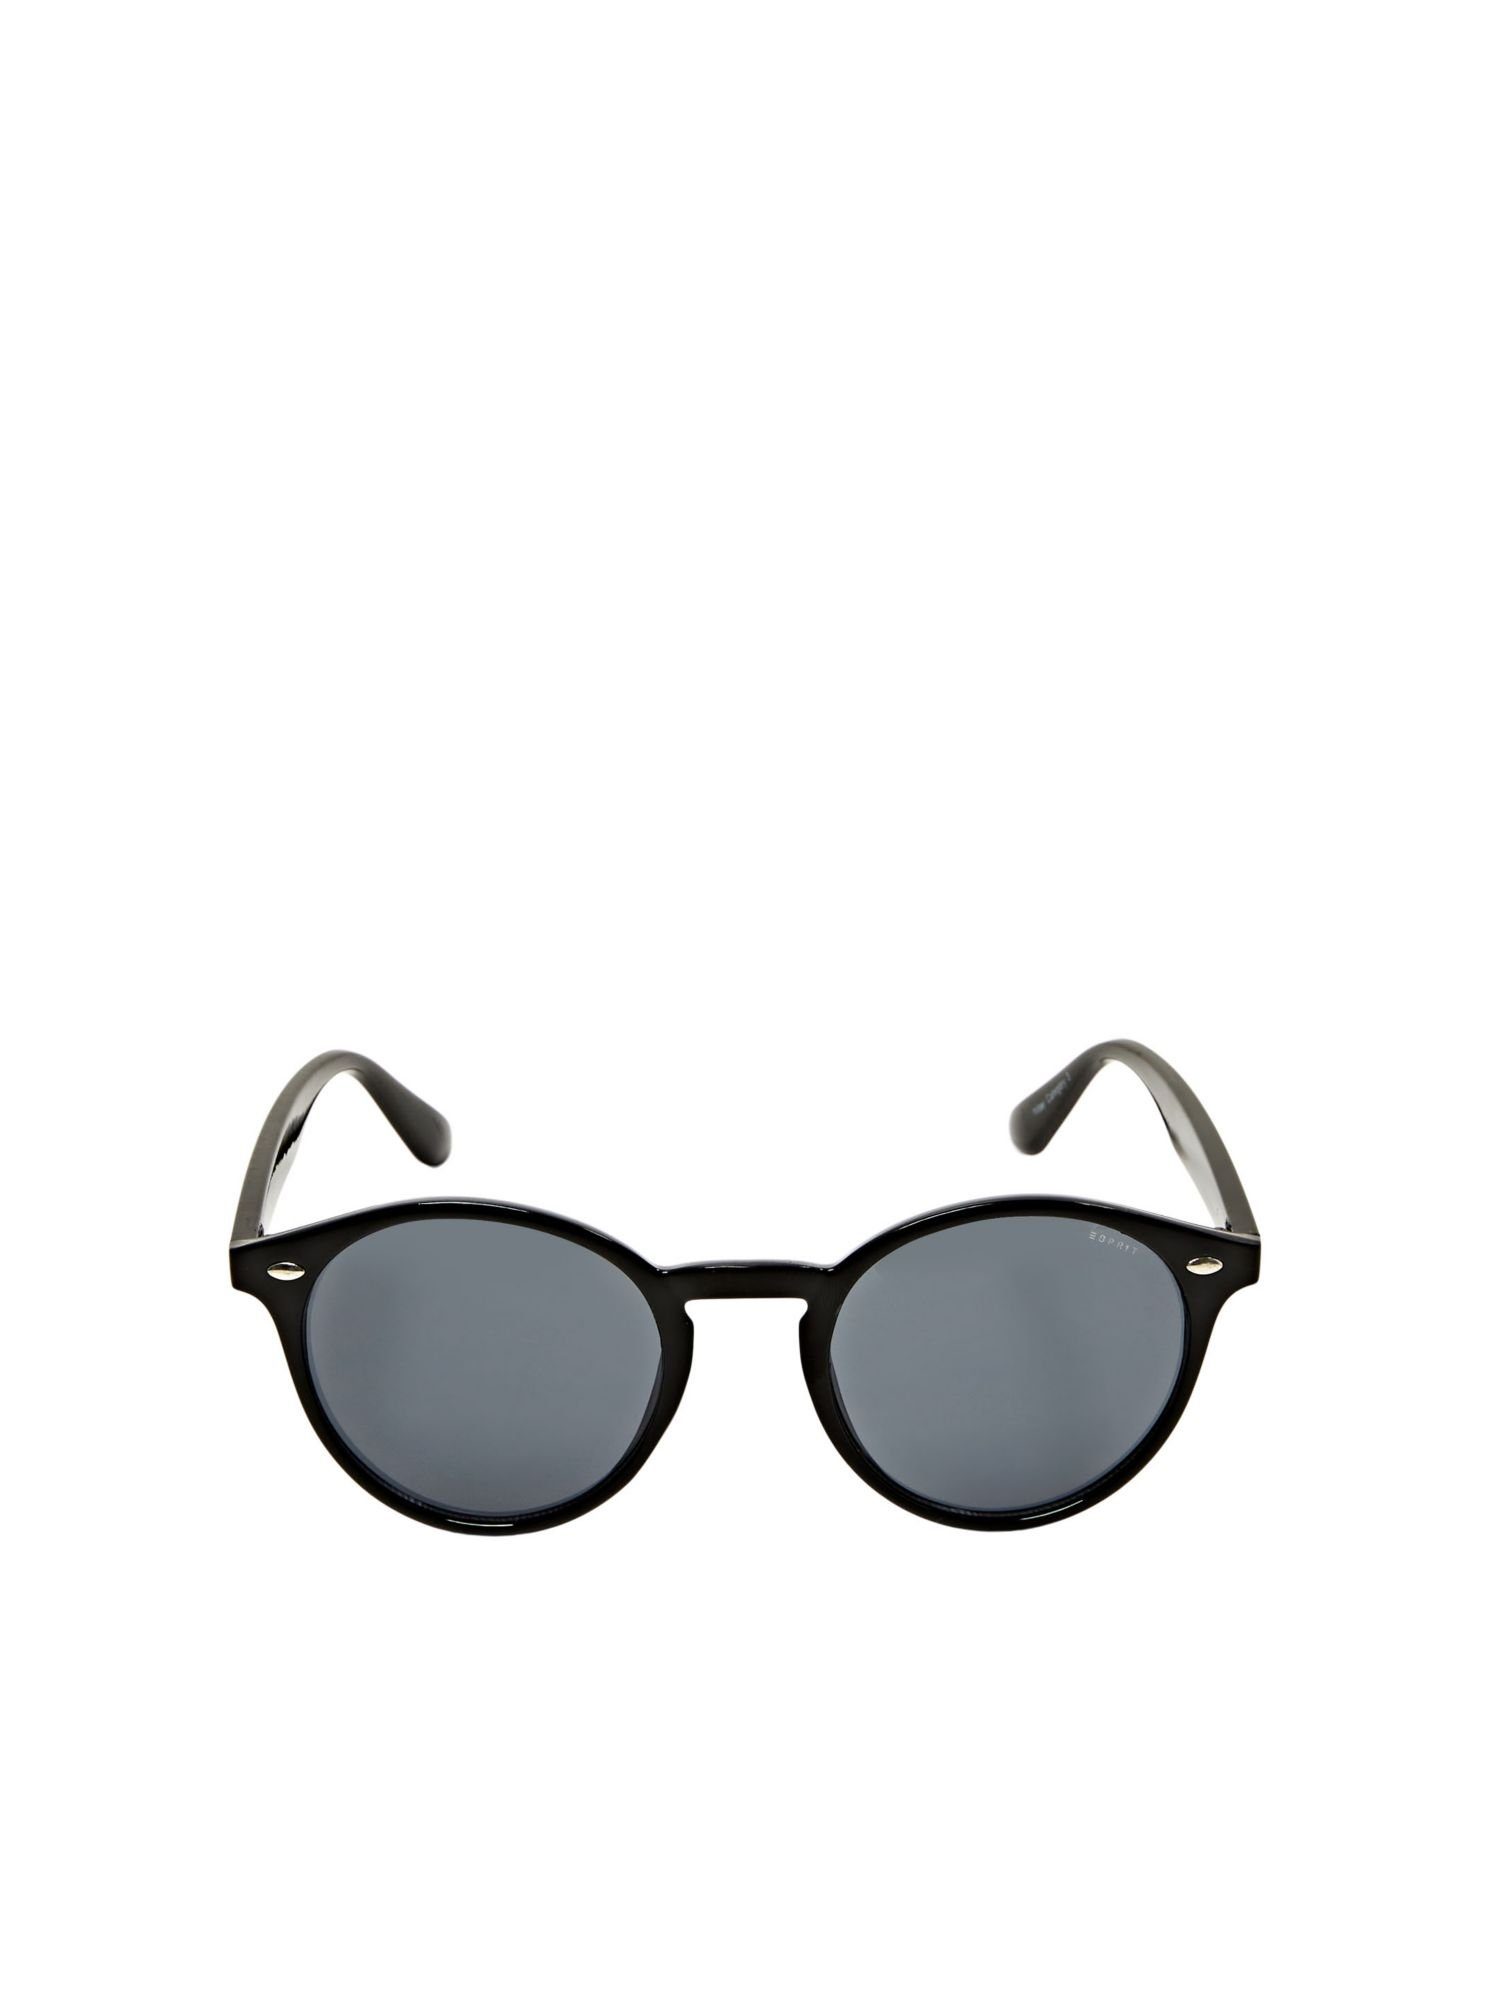 Esprit Sonnenbrille Sonnenbrille mit Gläsern runden BLACK